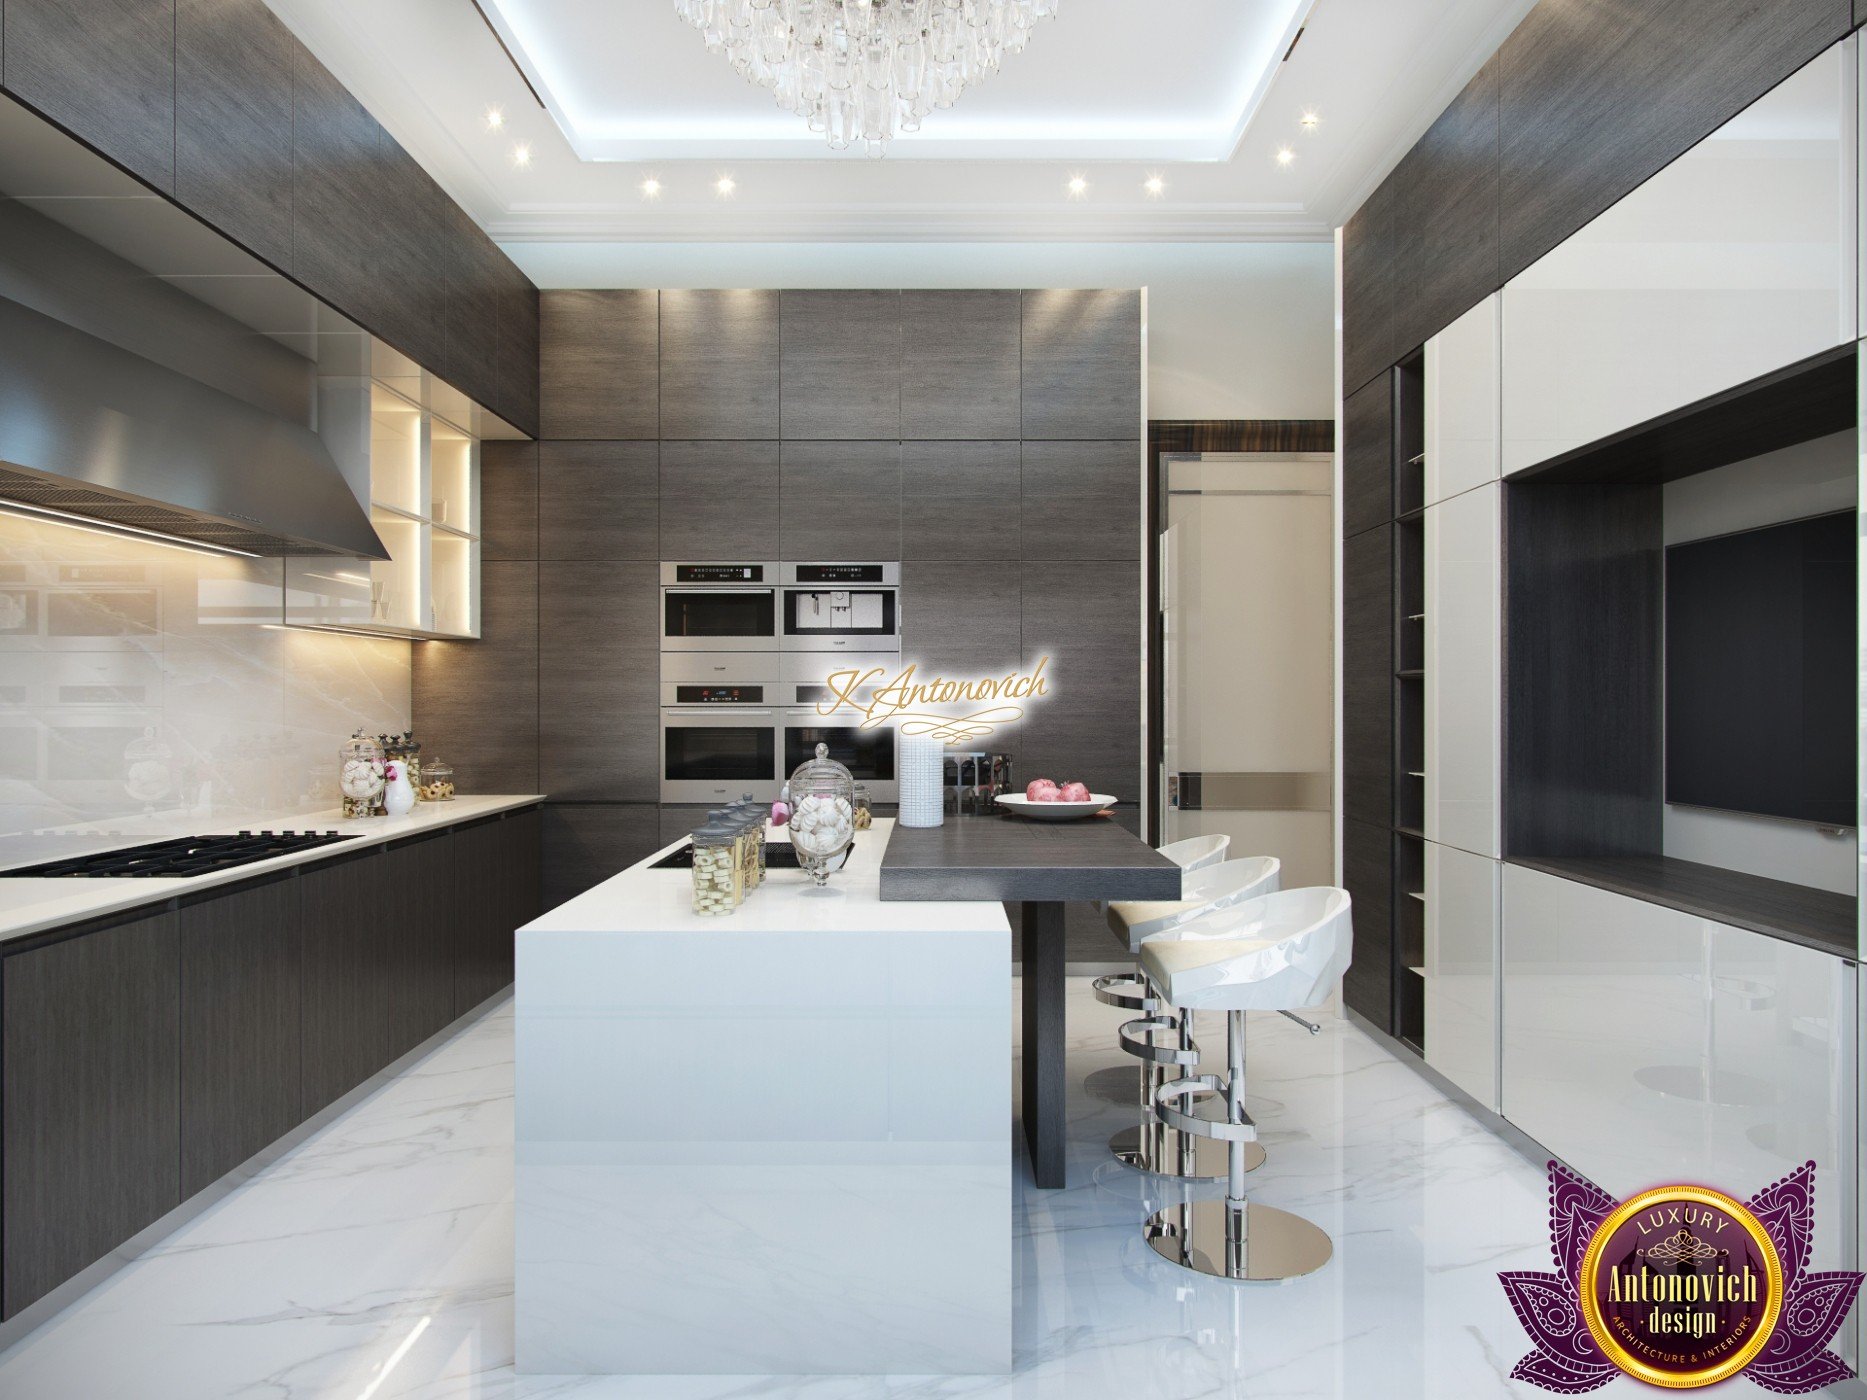 Contemporary Kitchen Interior, Luxury Kitchen Interior Designs